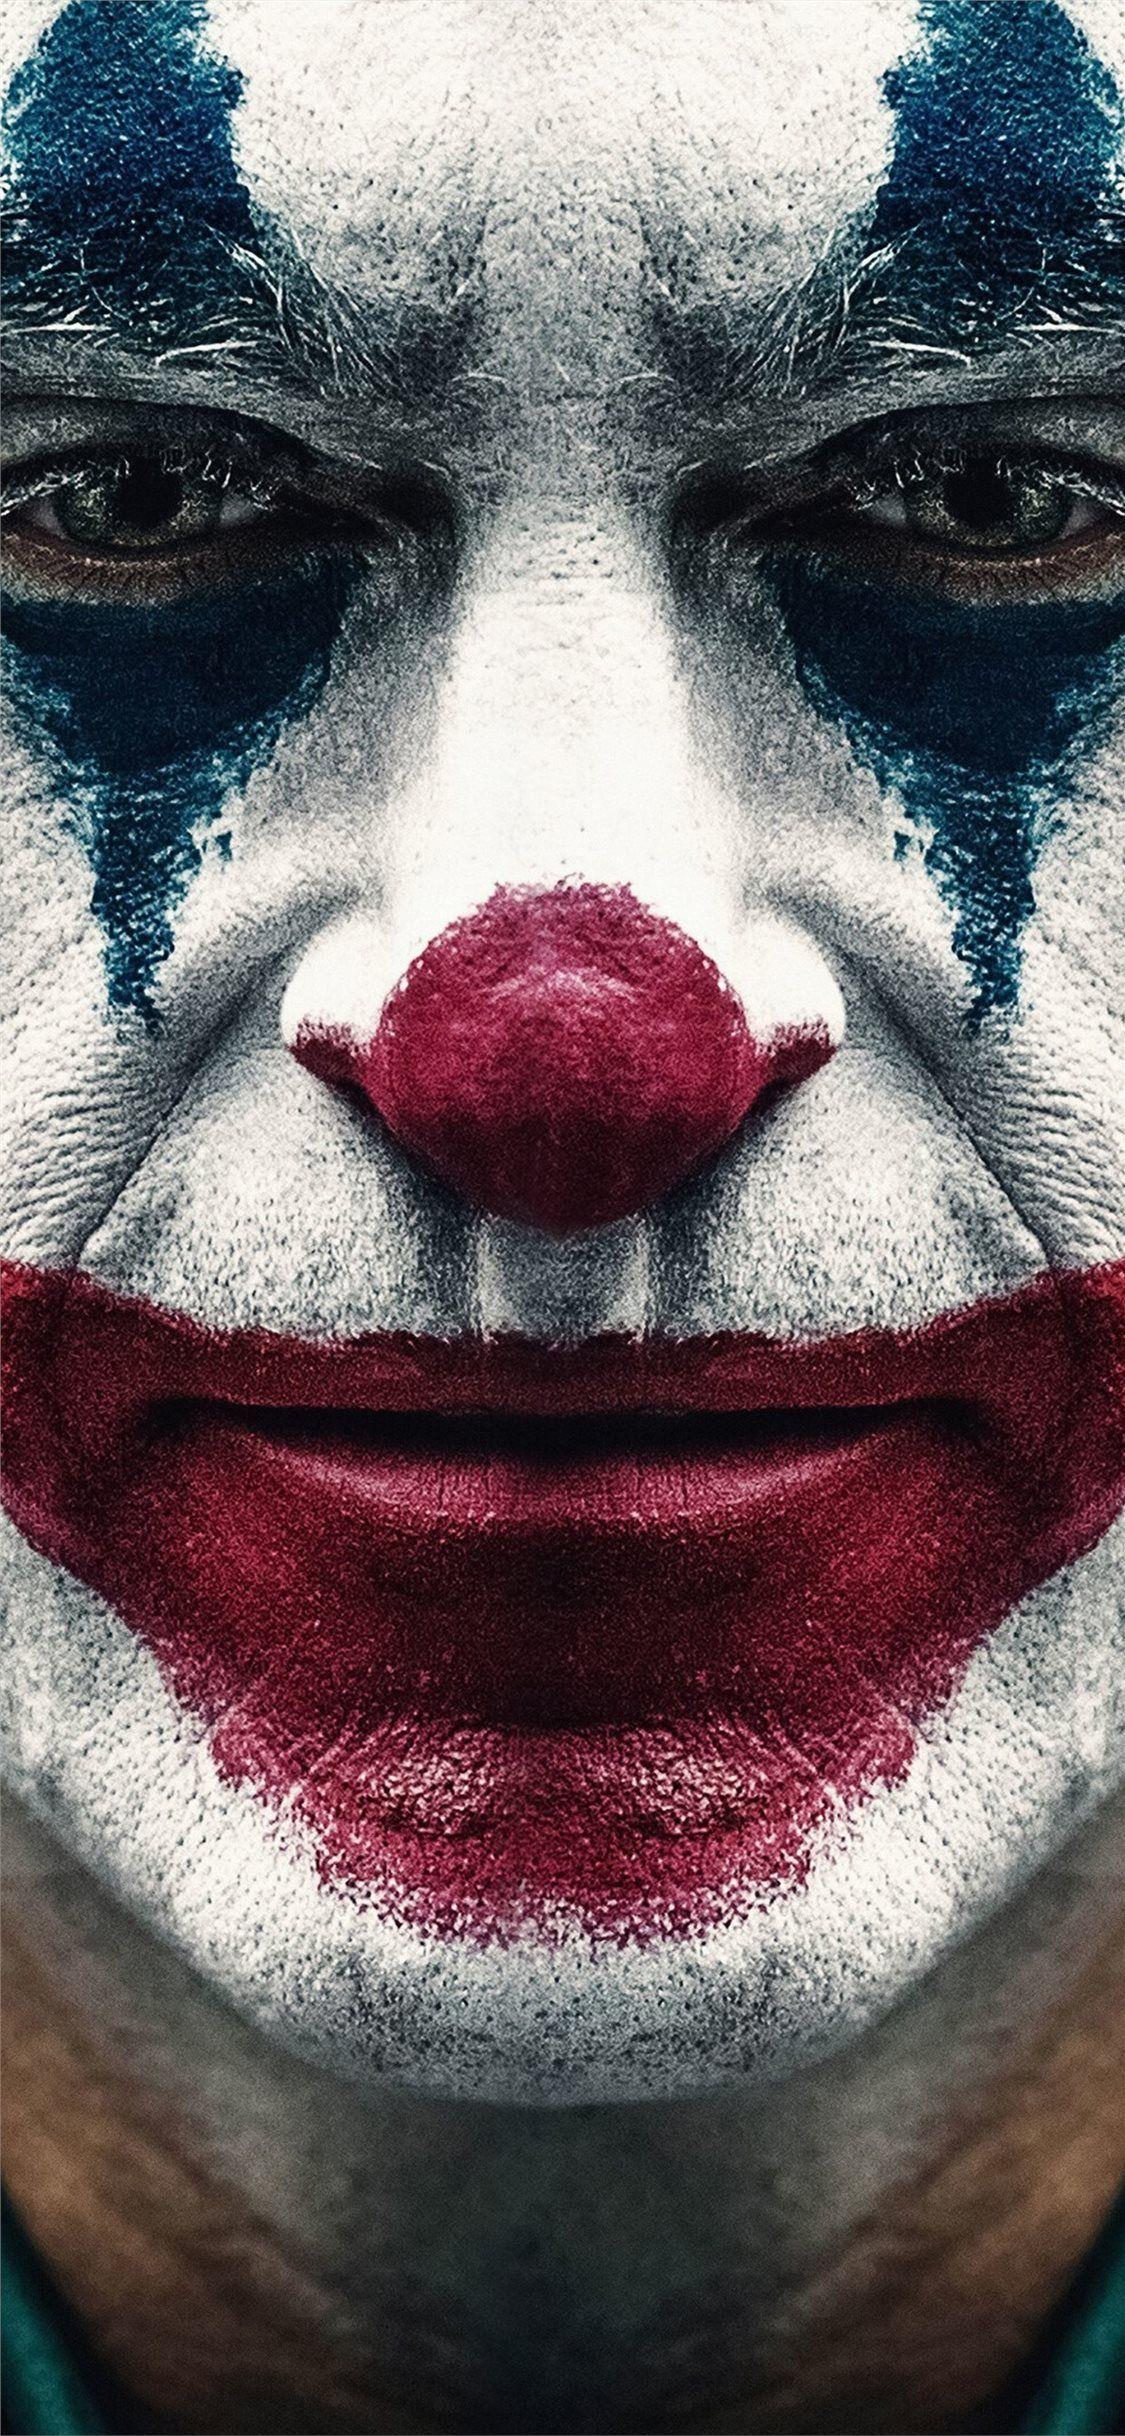 22+] Joker HD 2019 Wallpapers - WallpaperSafari